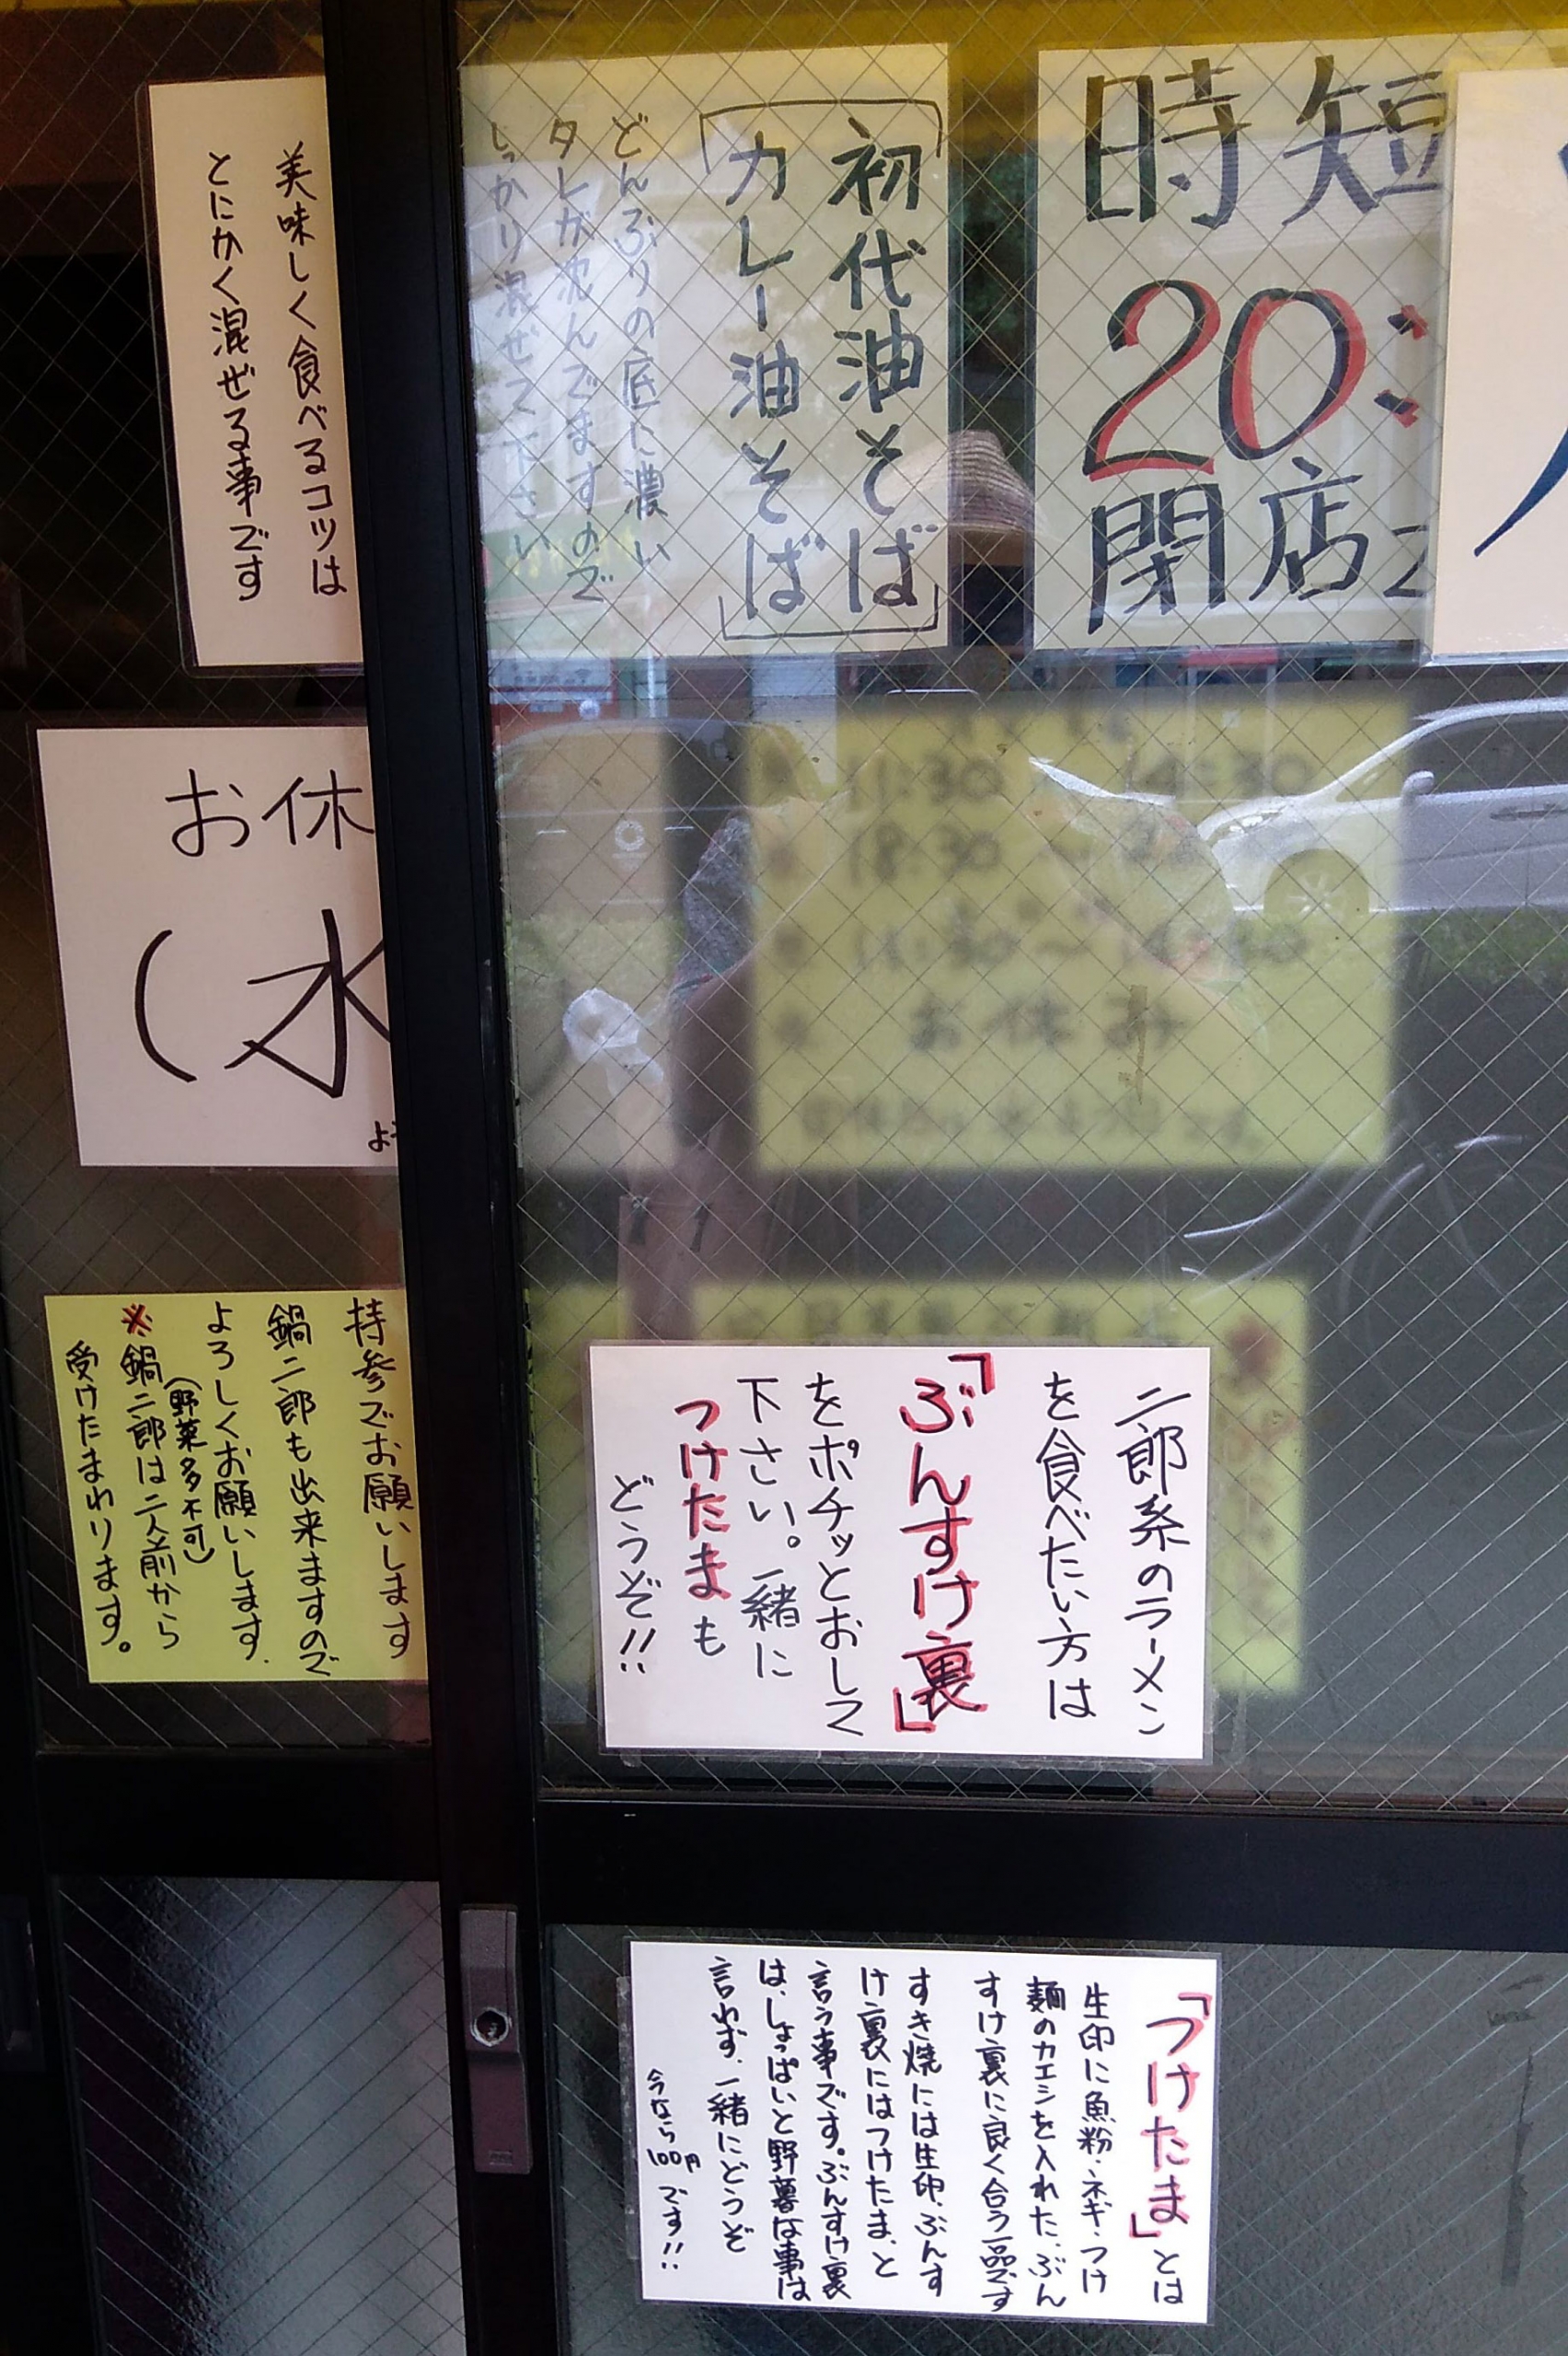 麺家 ぶんすけ 浅草で二郎系インスパイア ラーメンを食べたい 古着と趣味のデータベース